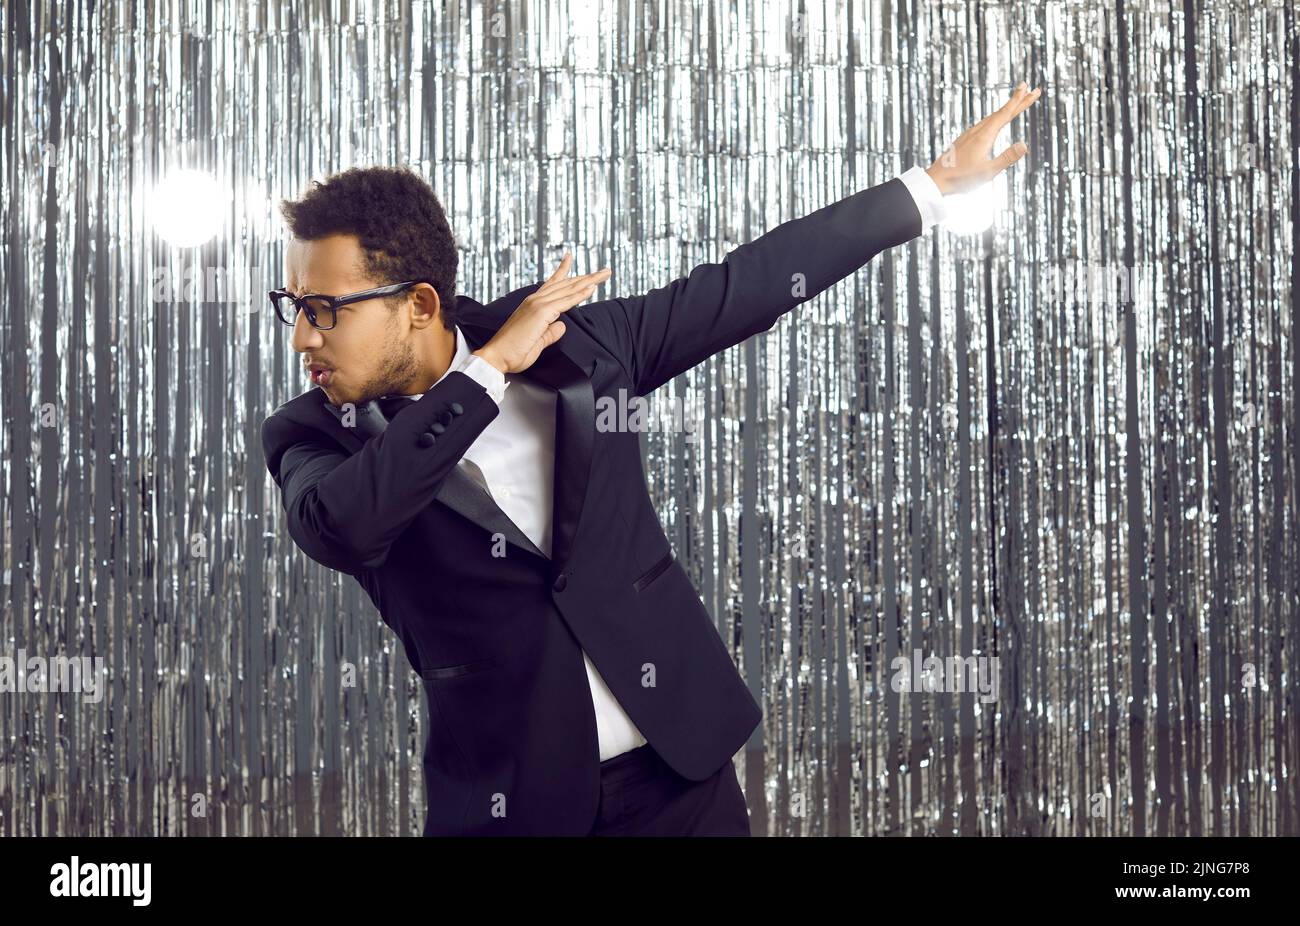 Fröhlicher, selbstbewusster schwarzer Mann in Smoking-Anzug und Brille, der auf einer Party tanzt und Spaß hat Stockfoto